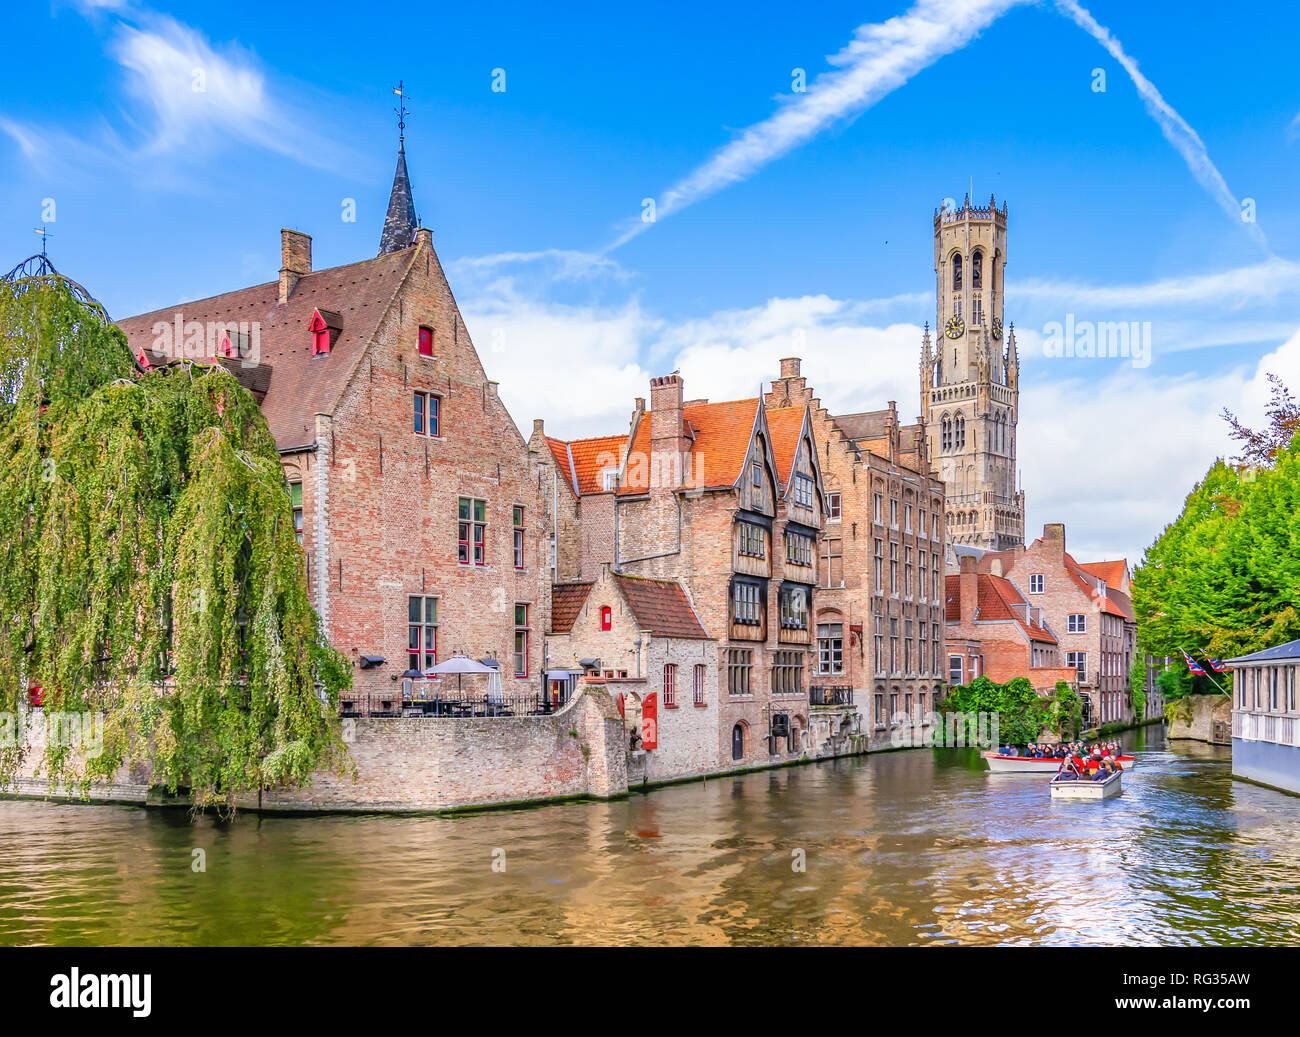 Punto di vista popolare nel centro della città con i tradizionali edifici in mattoni lungo il canale in Bruges, Belgio Foto Stock